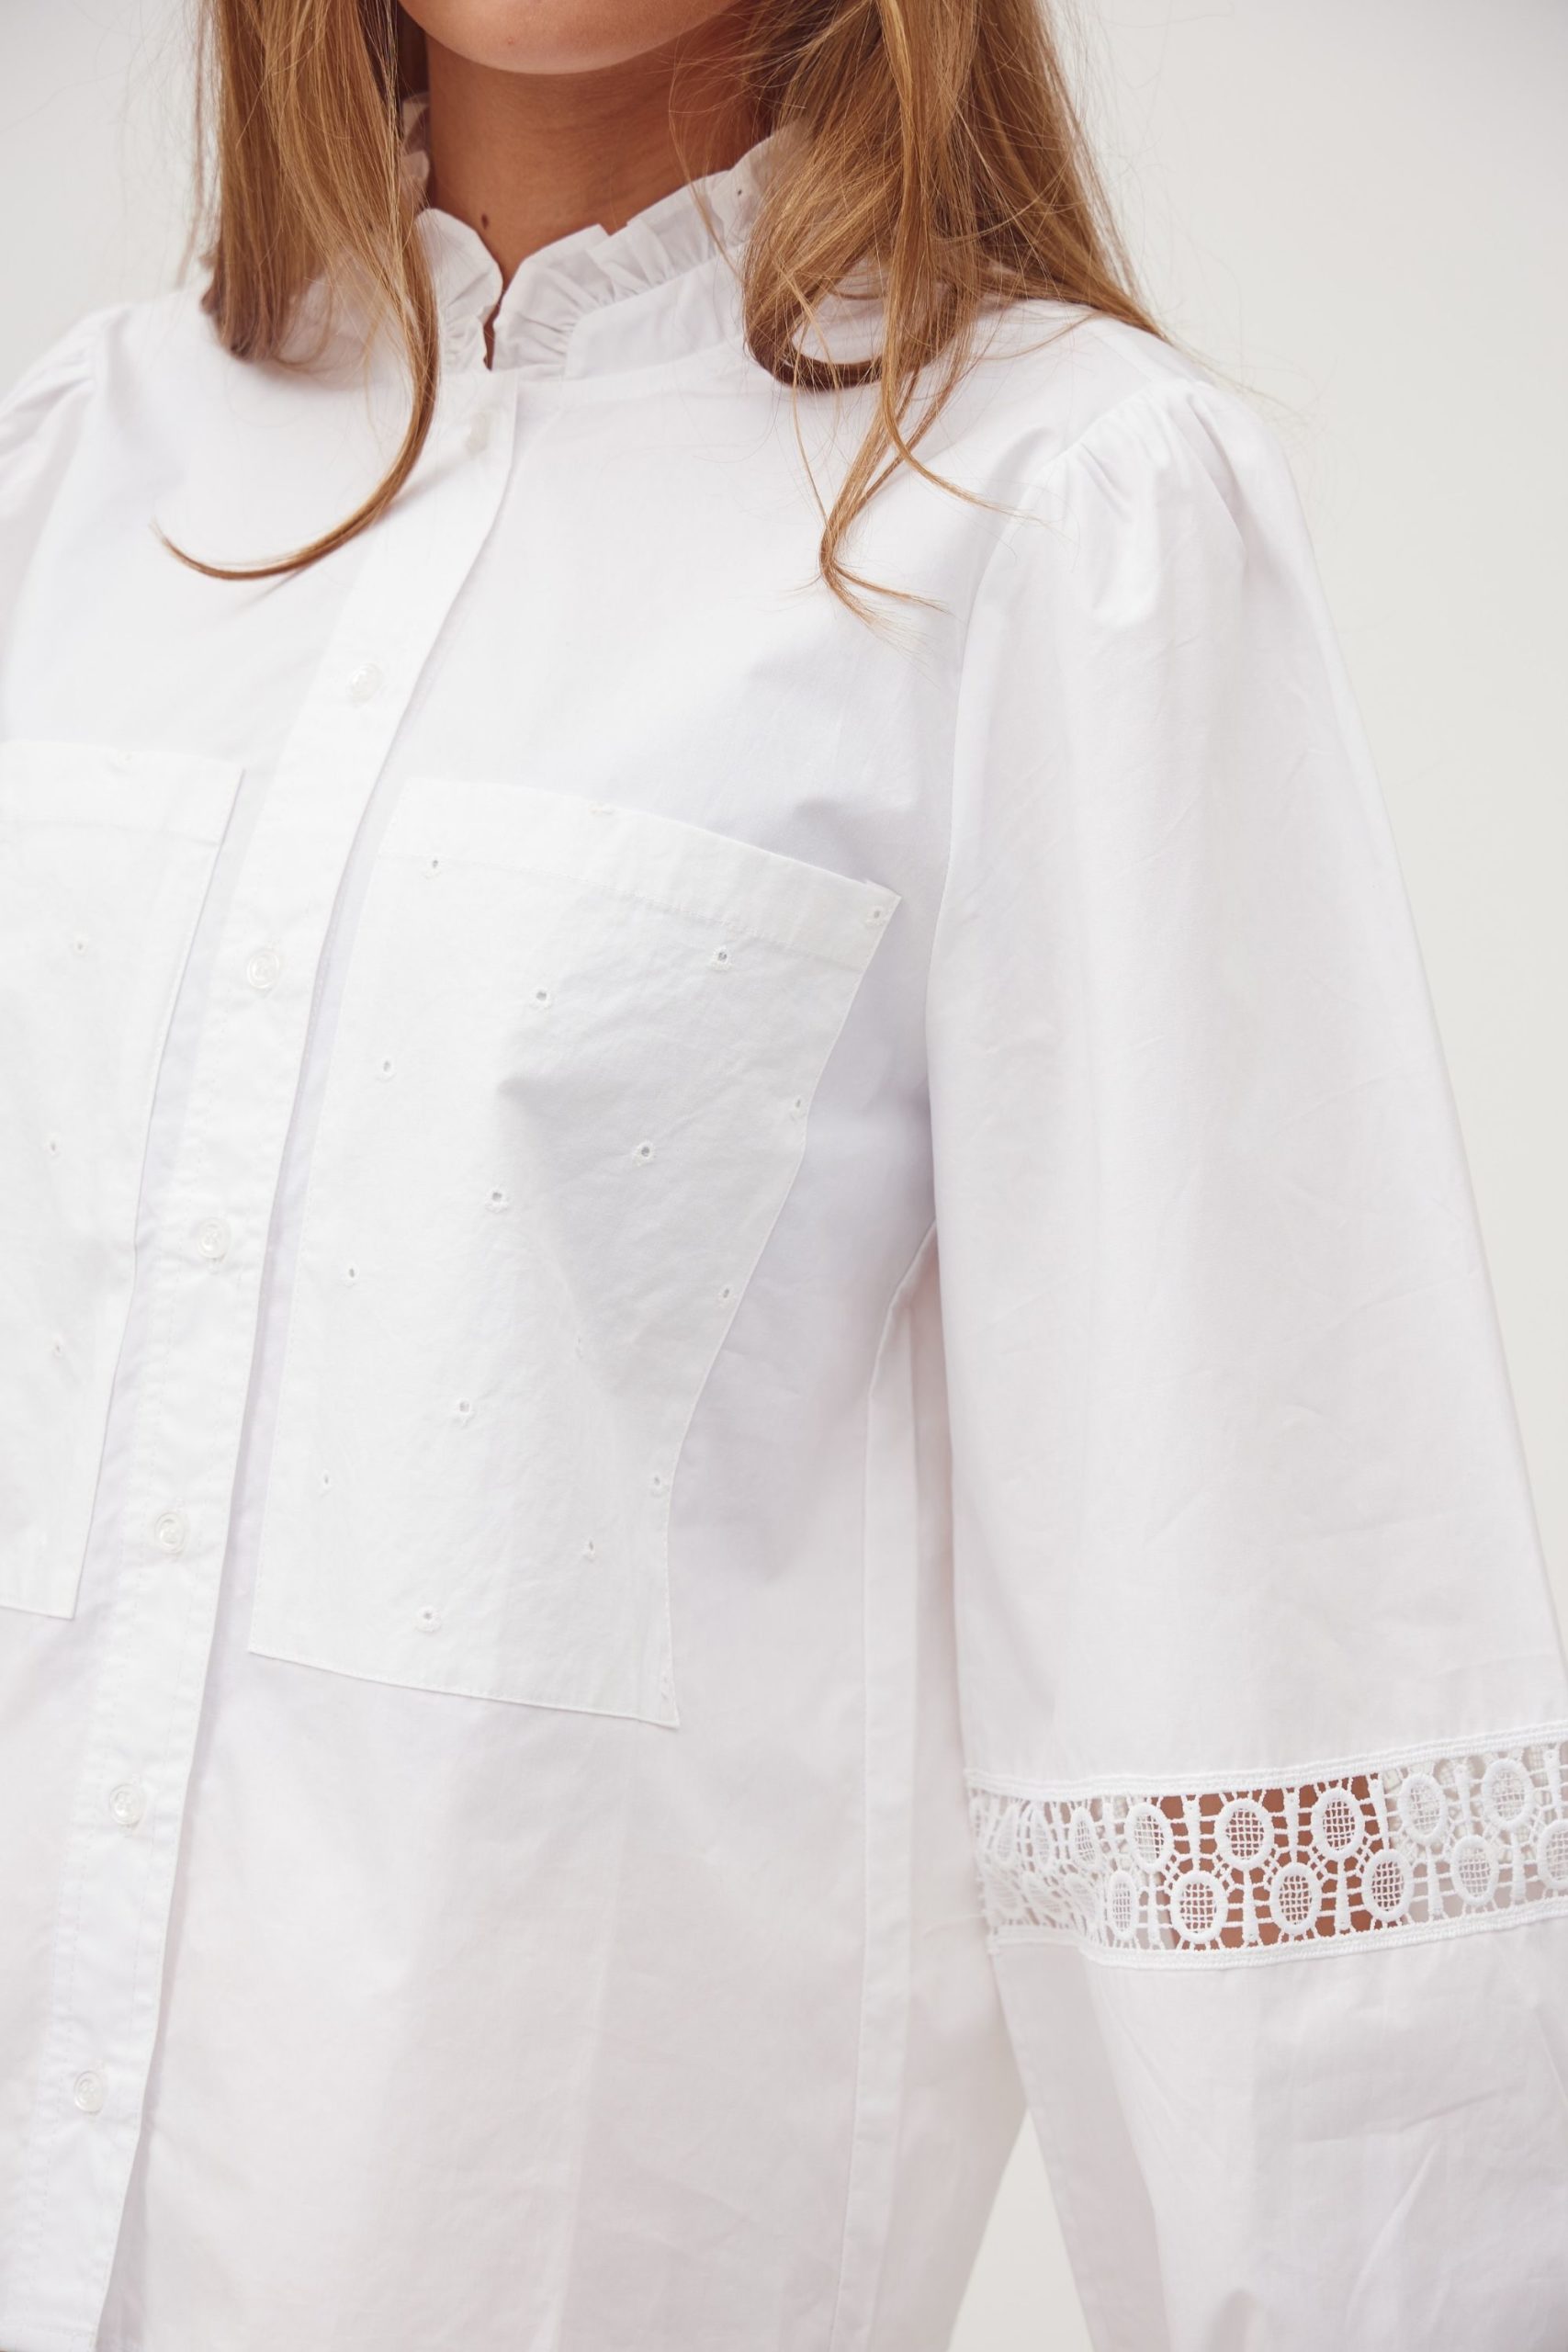 Tiffany white Shirt detalis